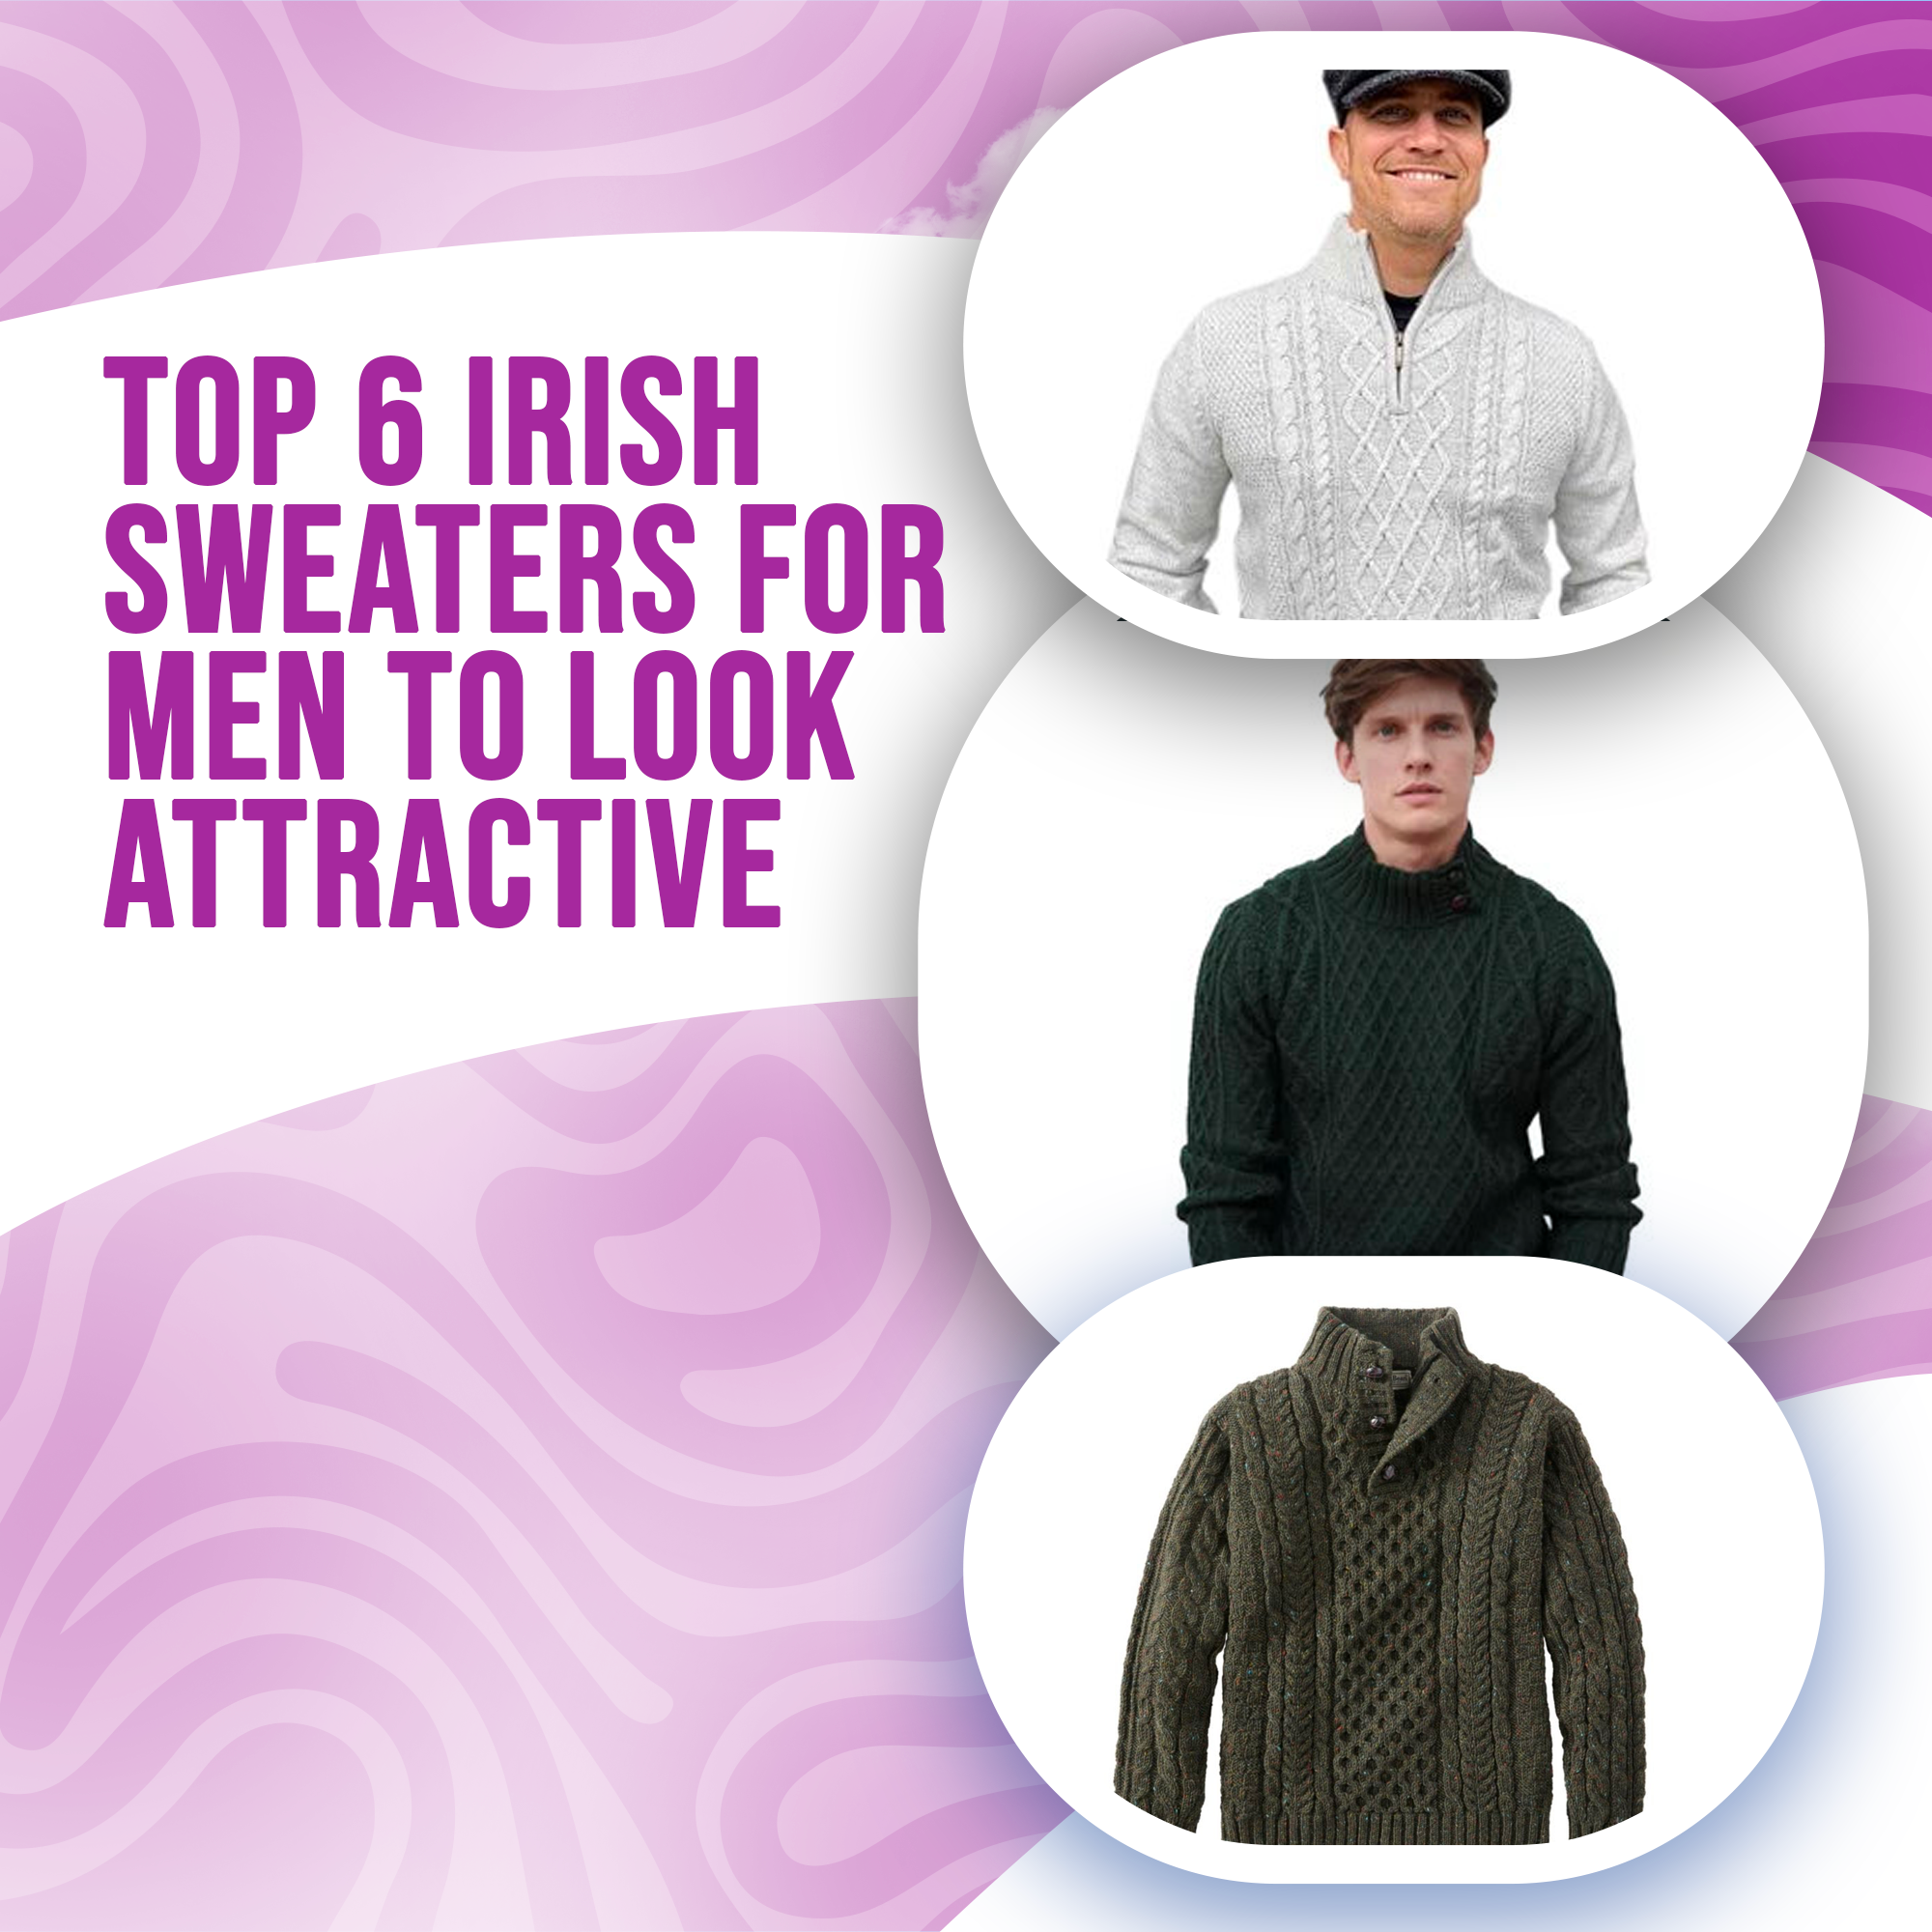 Top 6 Irish Sweaters For Men To Look Attractive